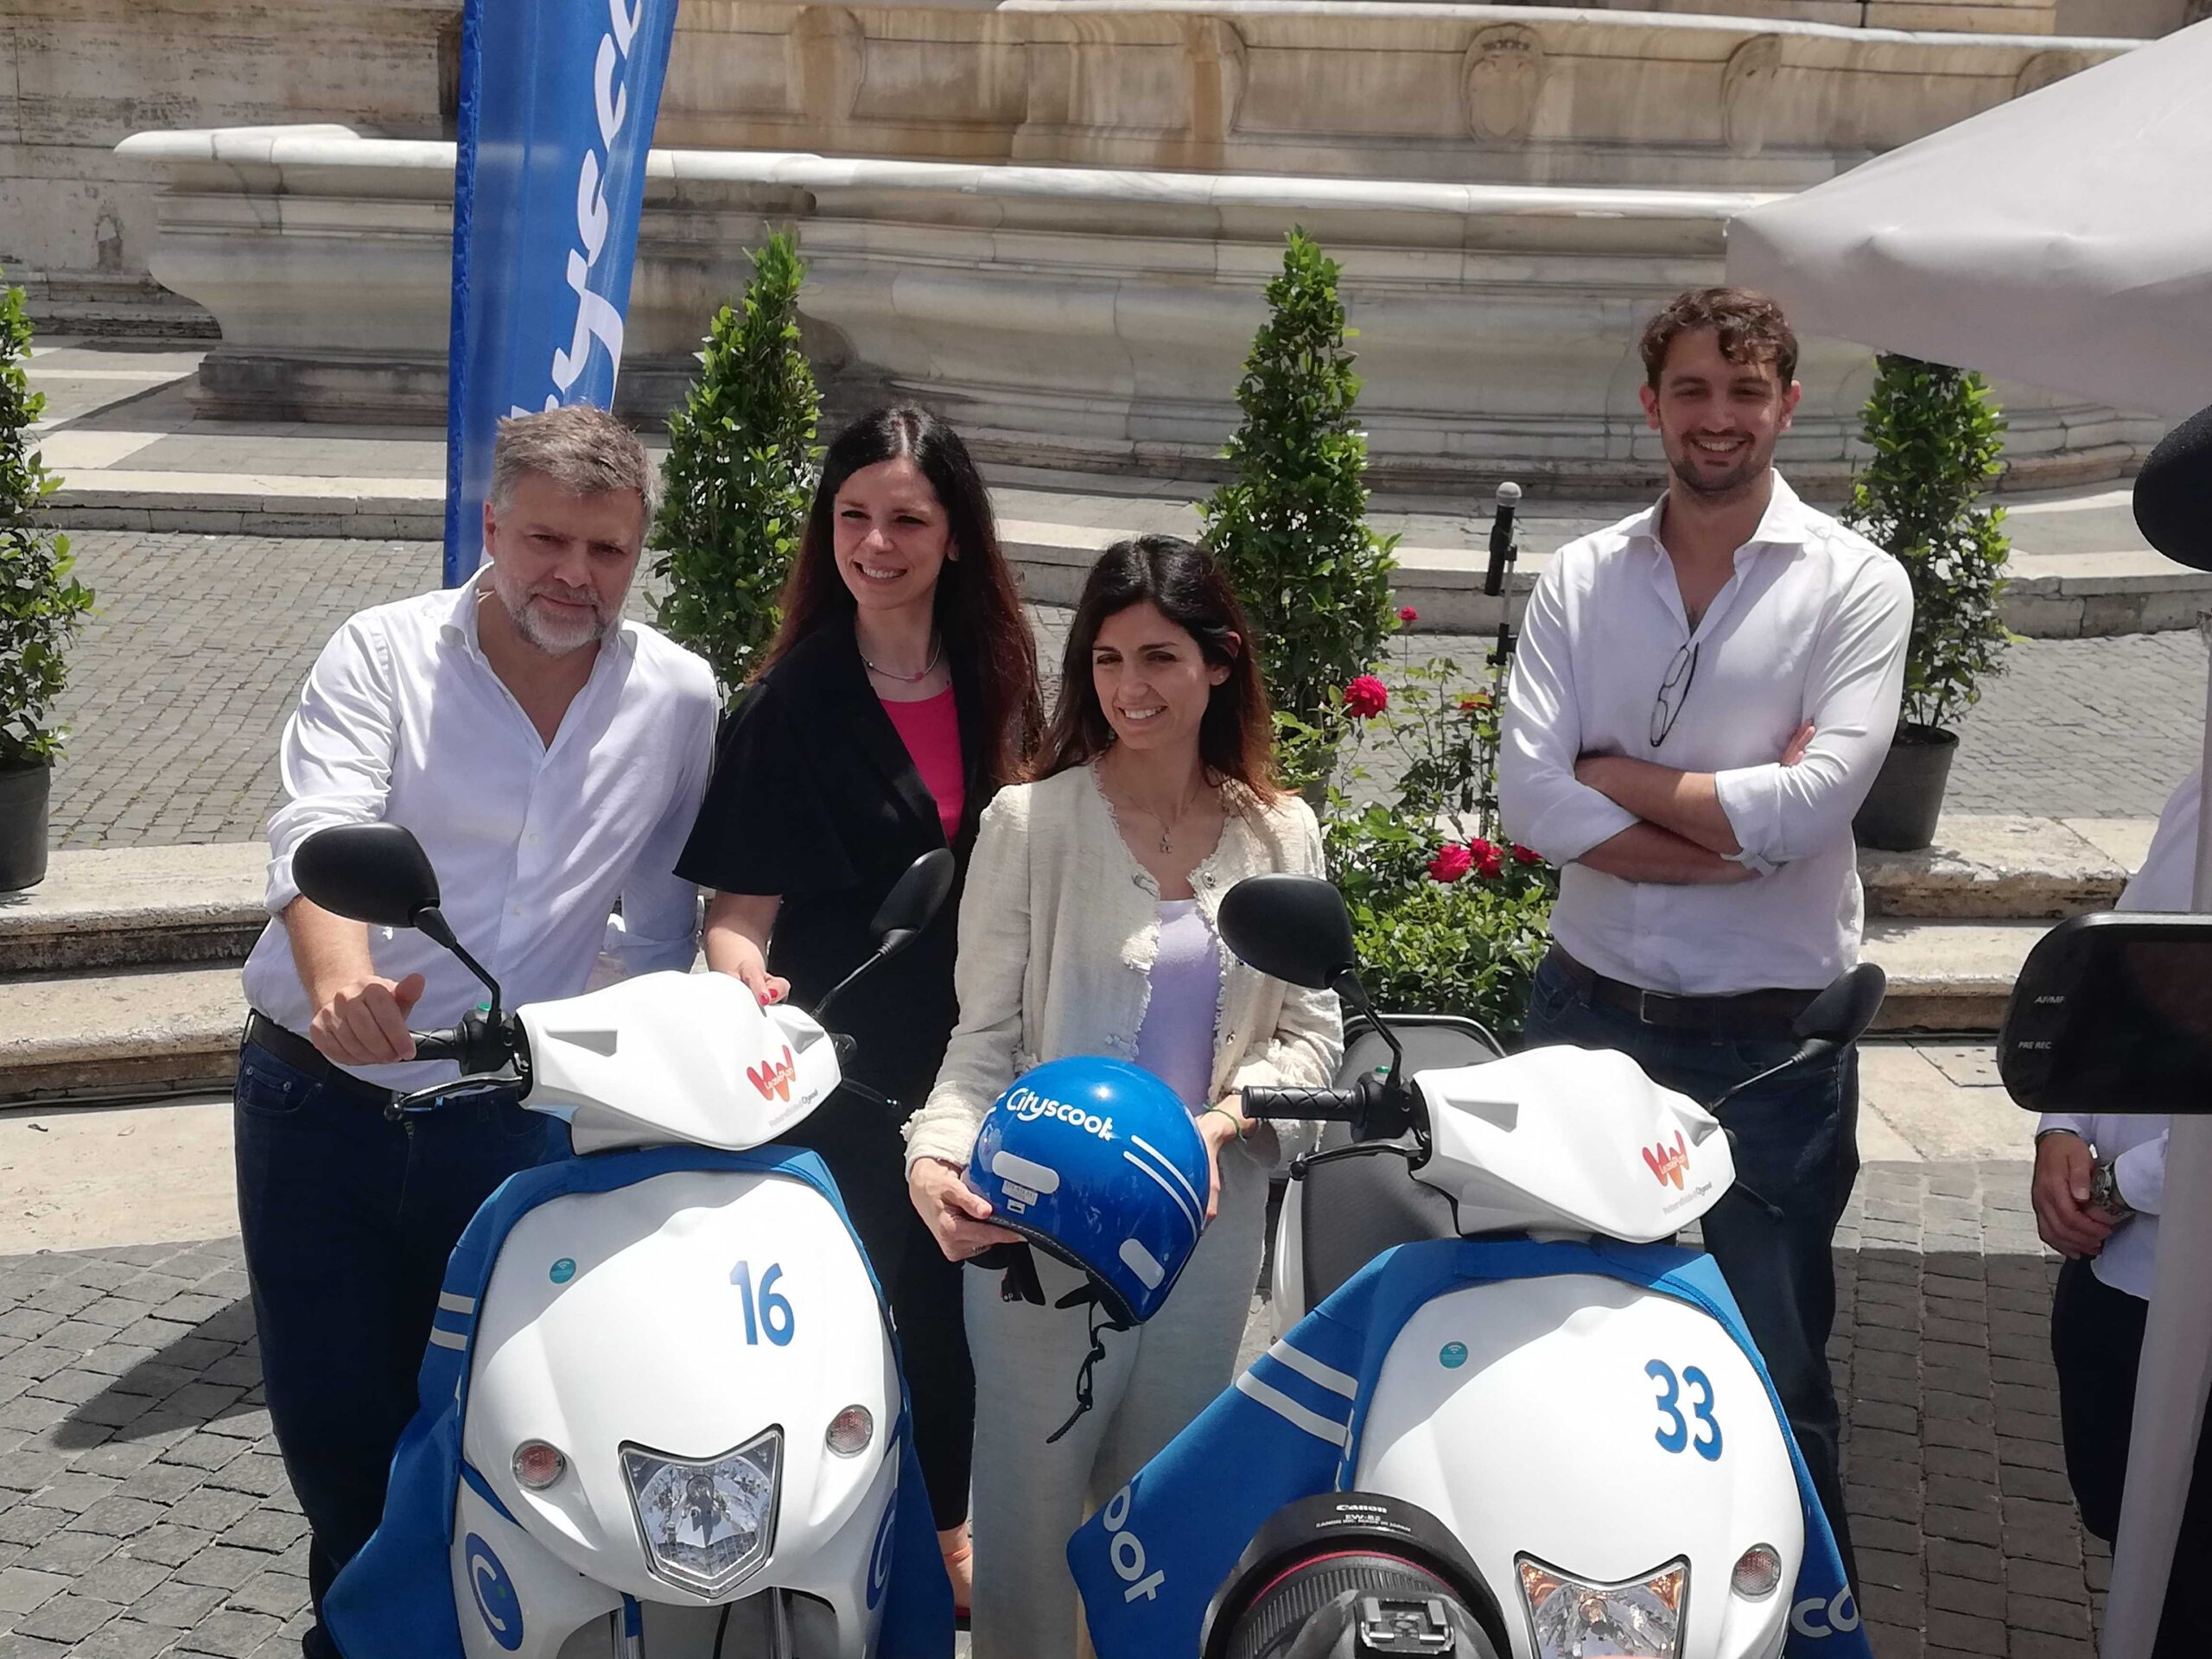 Roma: Cityscoot lancia un servizio di scooter elettrici in condivisione. Sinergia con il Comune per una mobilità sostenibile